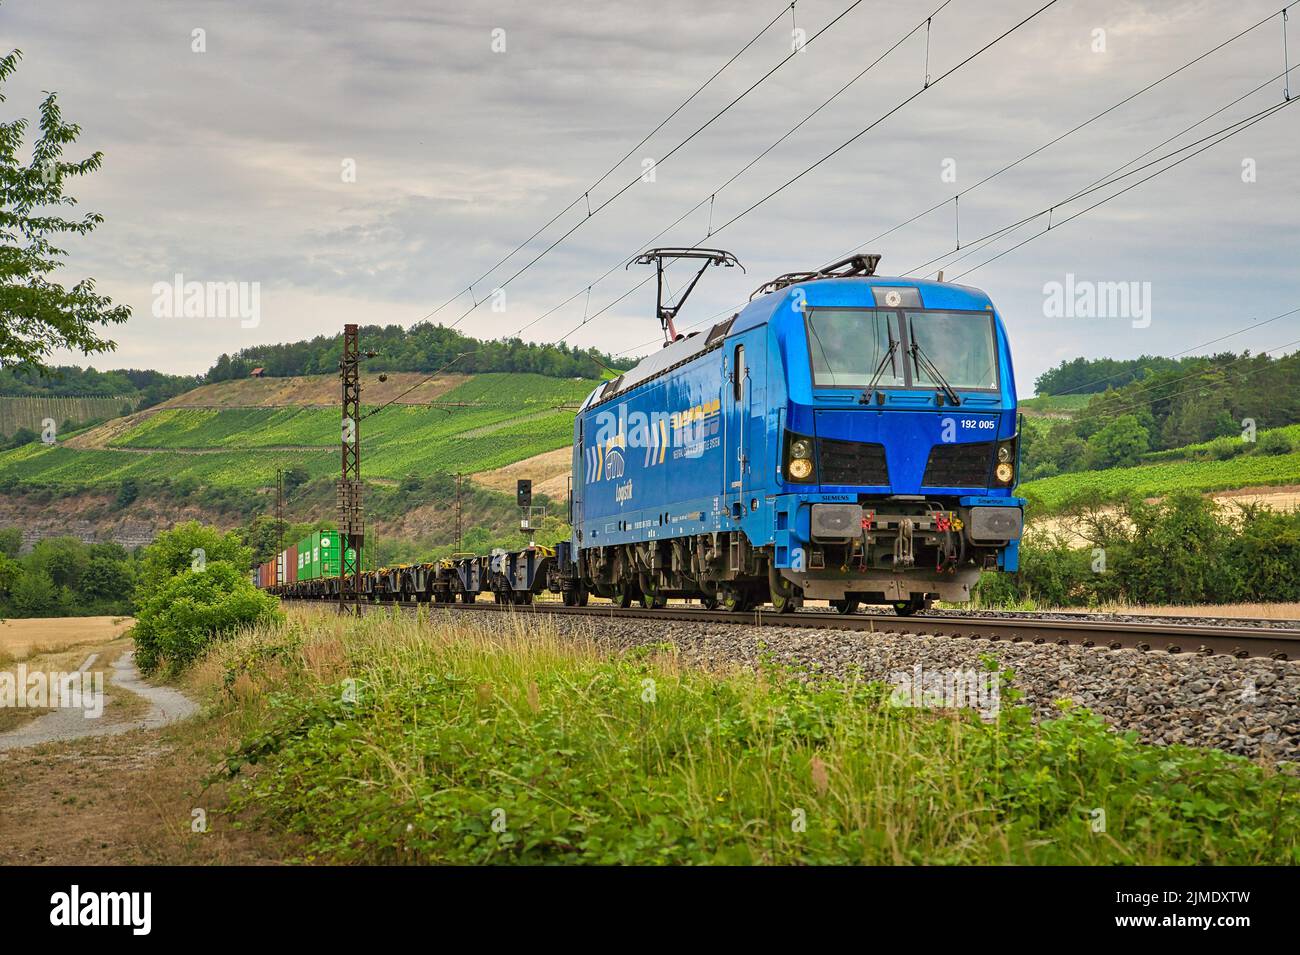 Der Blick auf eine blaue Lokomotive auf den Eisenbahnen unter dem wolkigen Himmel Stockfoto